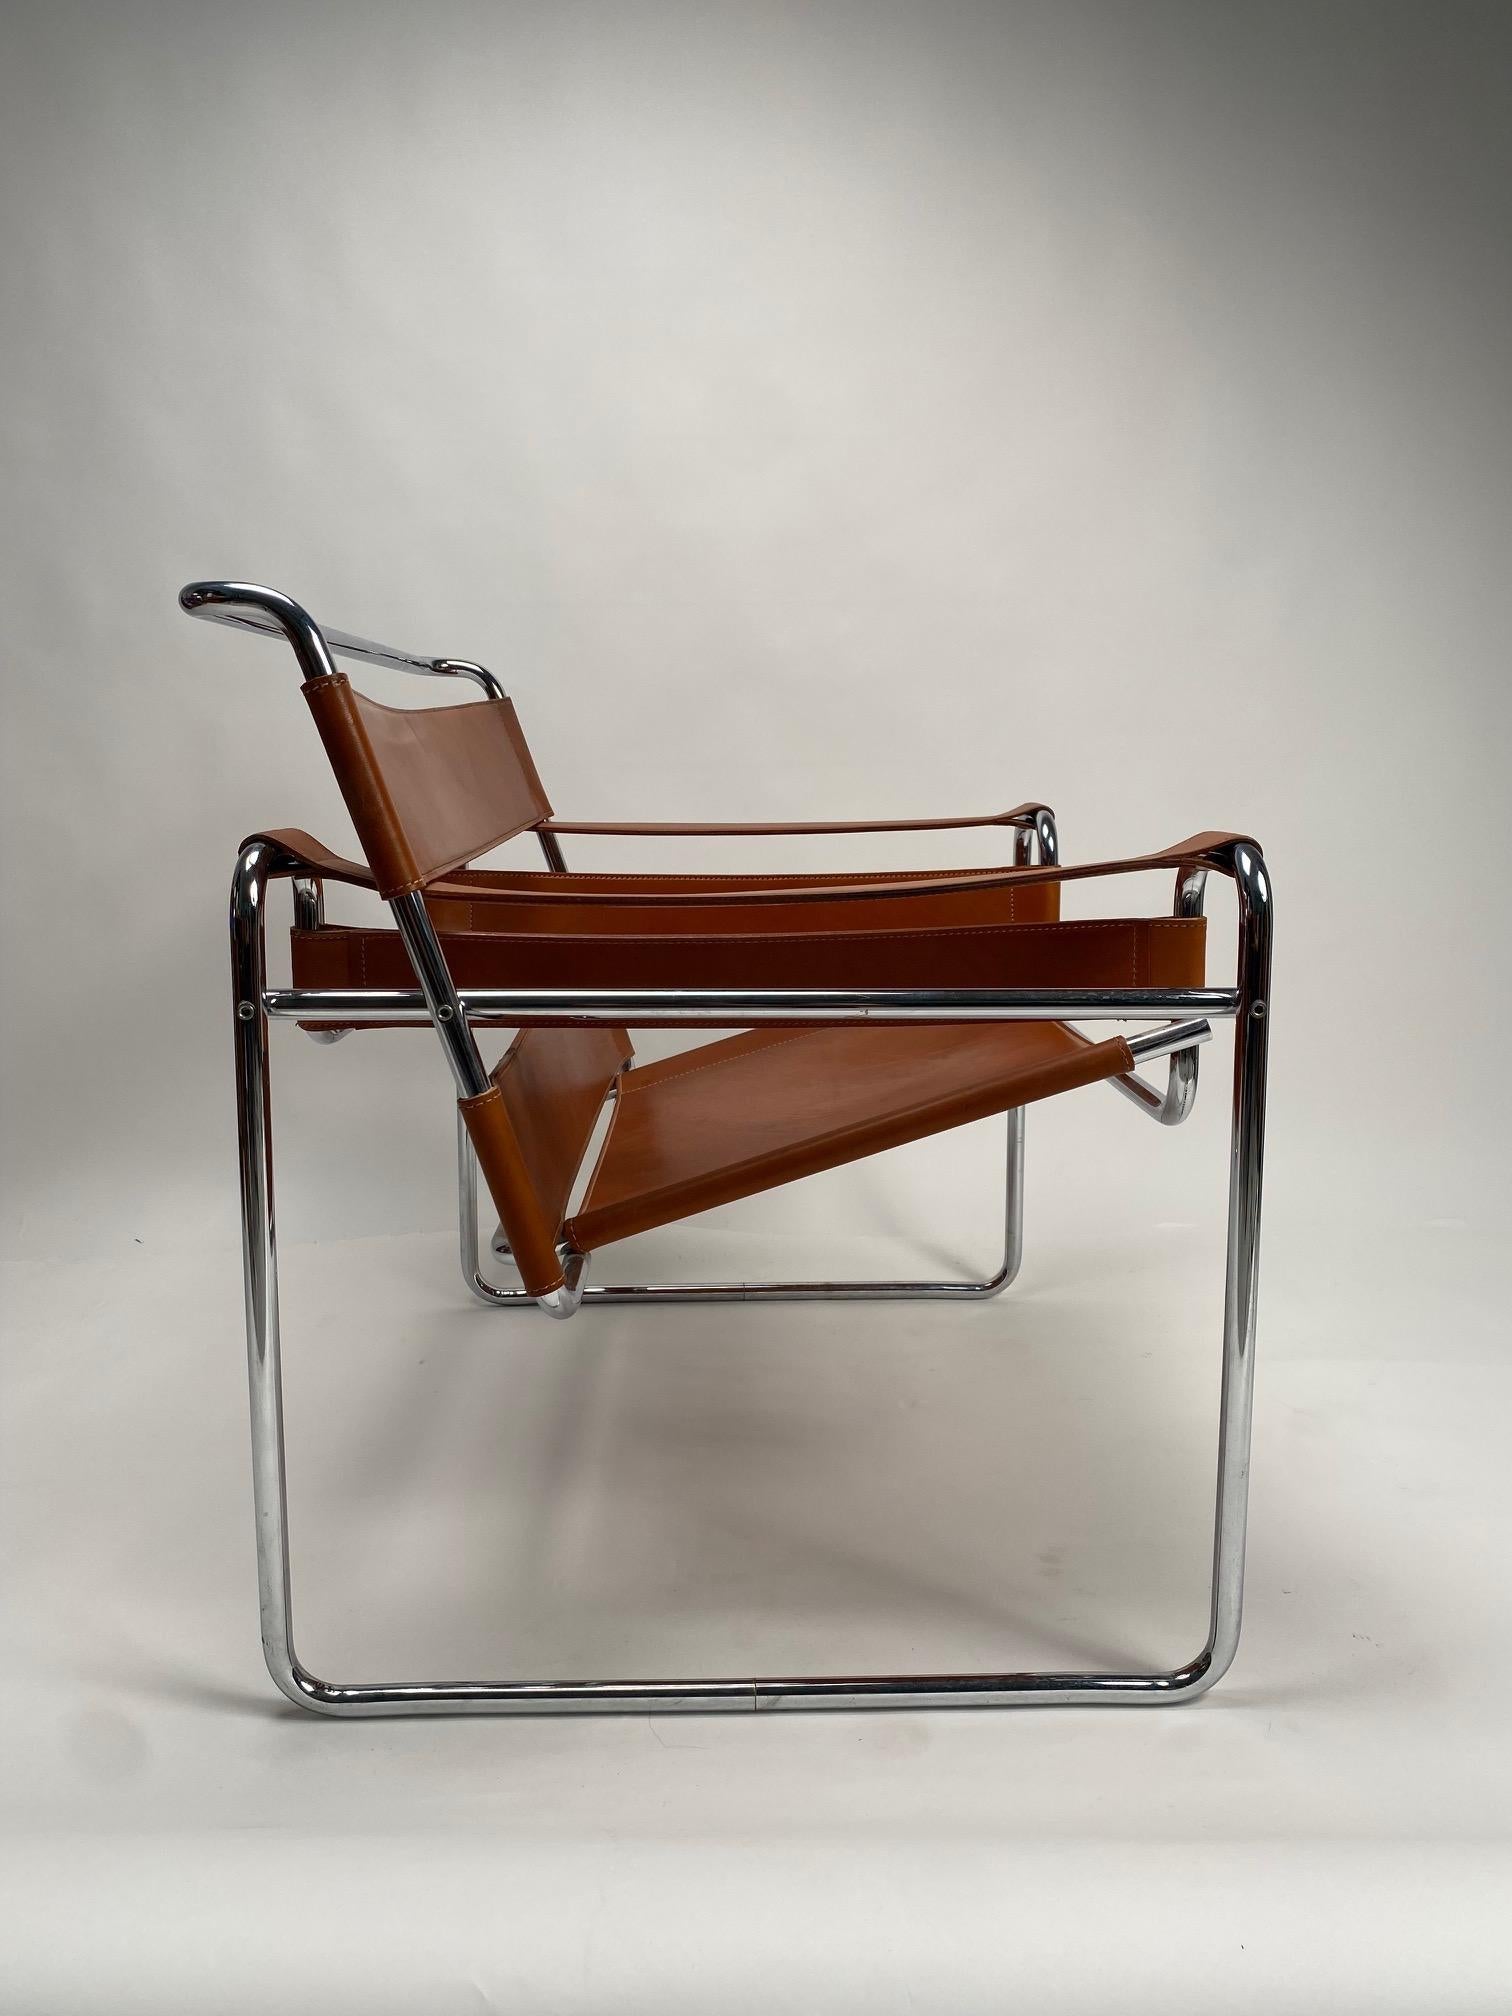 Marcel Breuer, Fauteuil Wassilly pour Gavina, Version originale vintage, Italie 1970

Le fauteuil Wassily, l'un des fauteuils les plus emblématiques et les plus sophistiqués du Bauhaus, conçu par Marcel Breuer en 1925-1926, également connu sous le